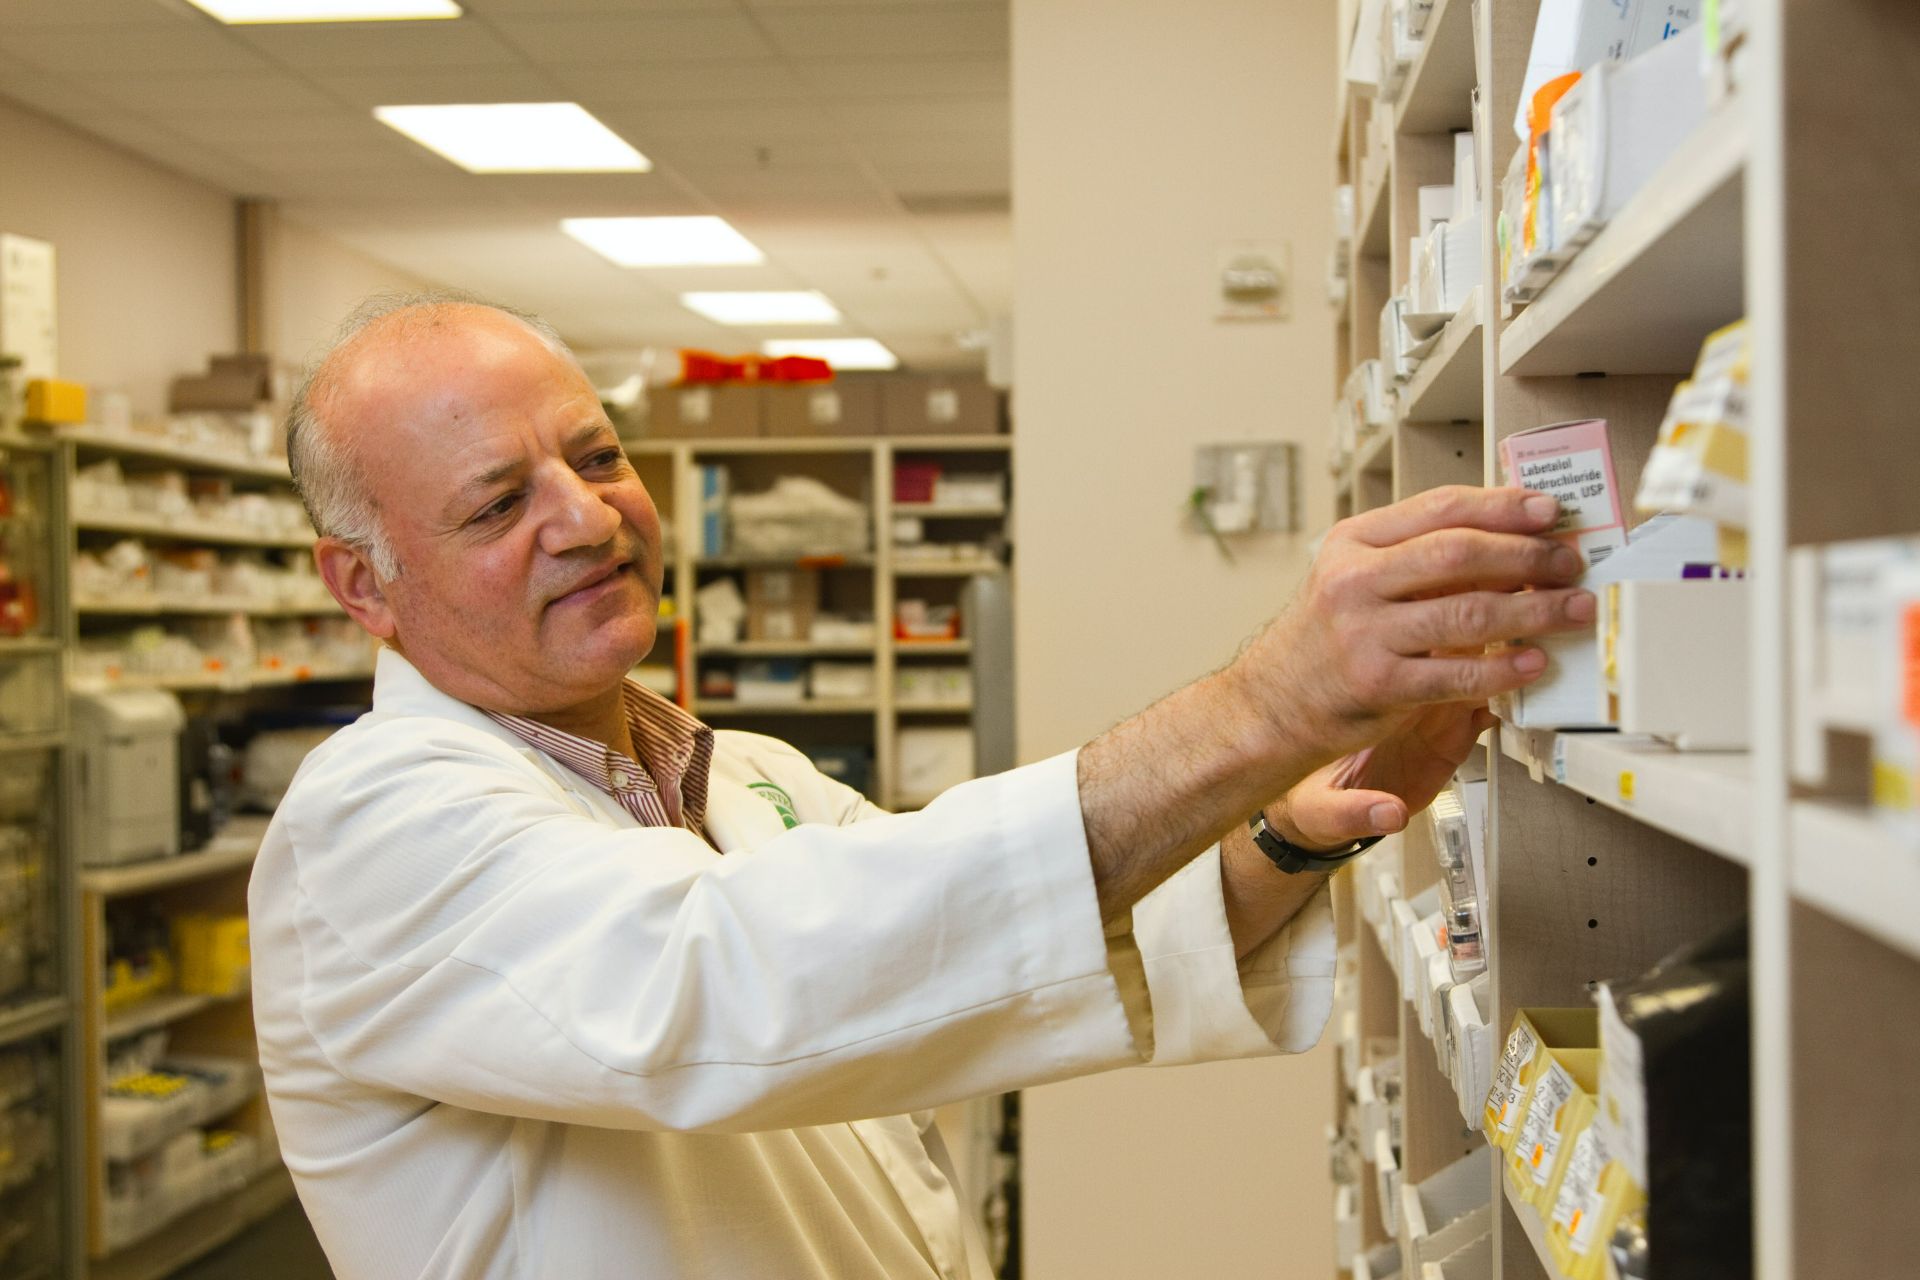 Studiu: pacienții au încredere în farmaciști și în informațiile primite